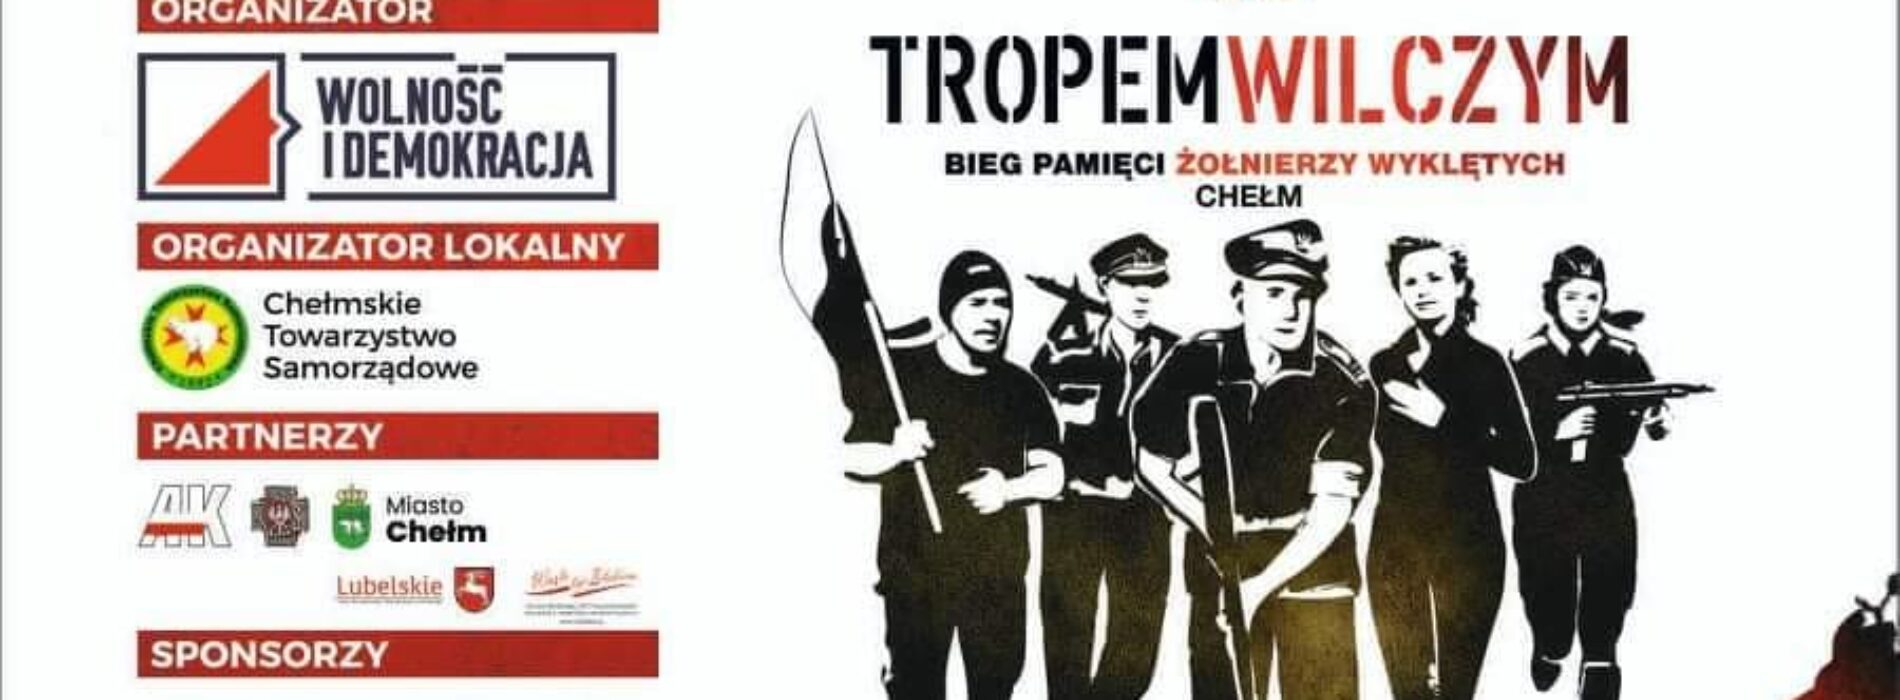 Bieg Pamięci Żołnierzy Wyklętych “TROPEM WILCZYM” dnia 15 sierpnia 2021 r.